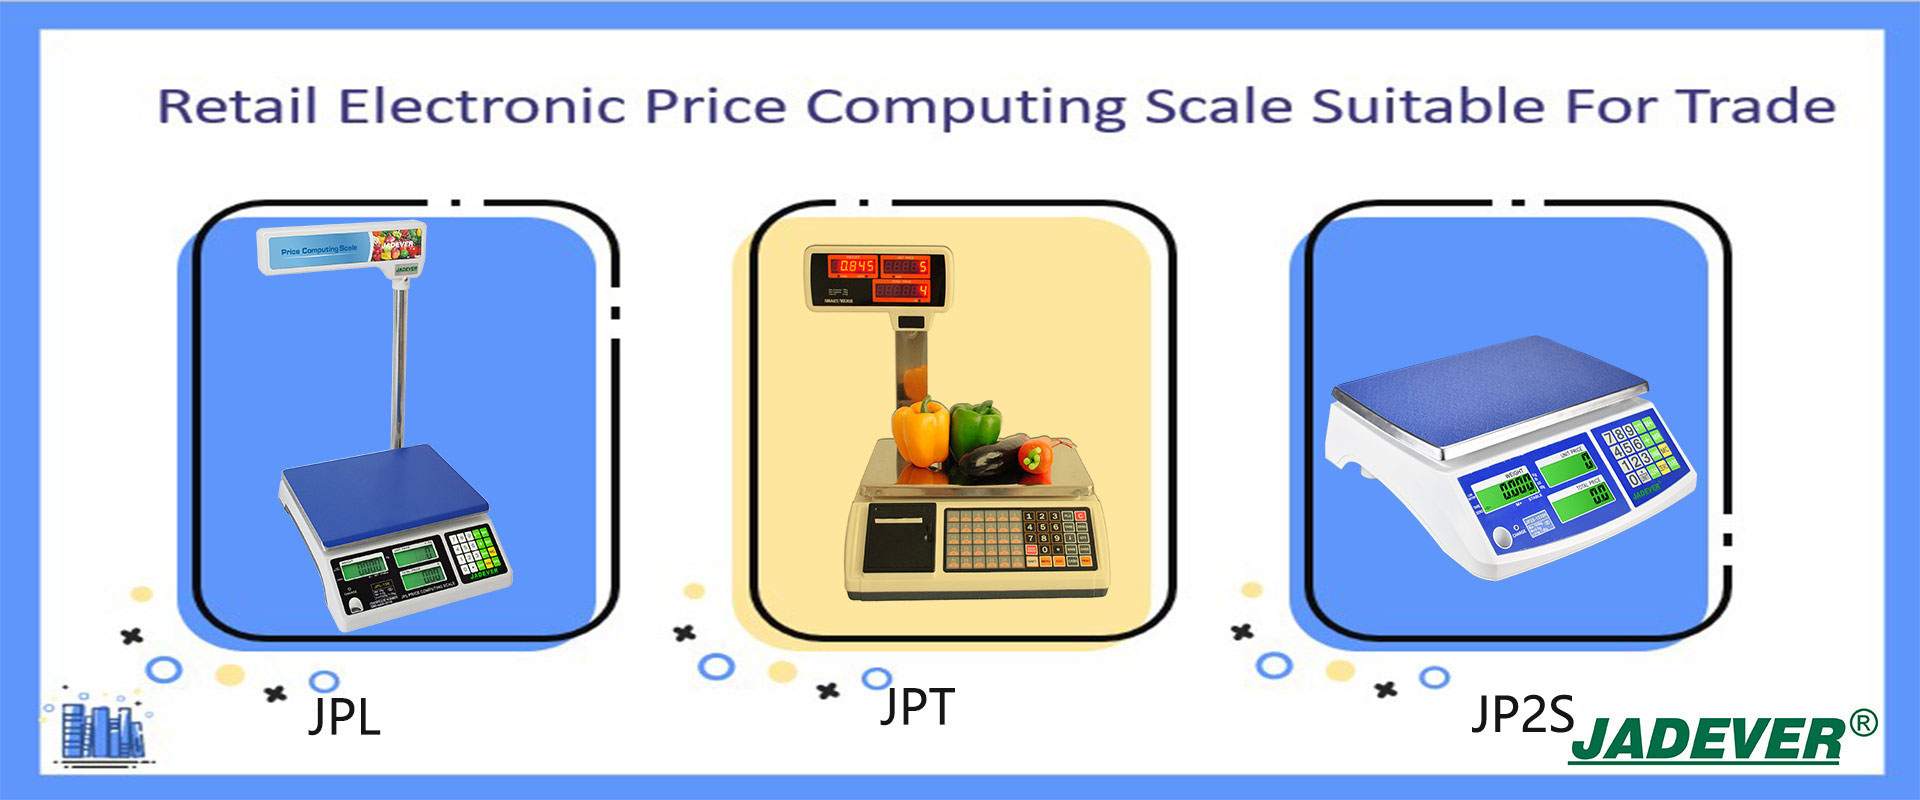 Quy mô tính toán giá điện tử bán lẻ phù hợp cho thương mại
